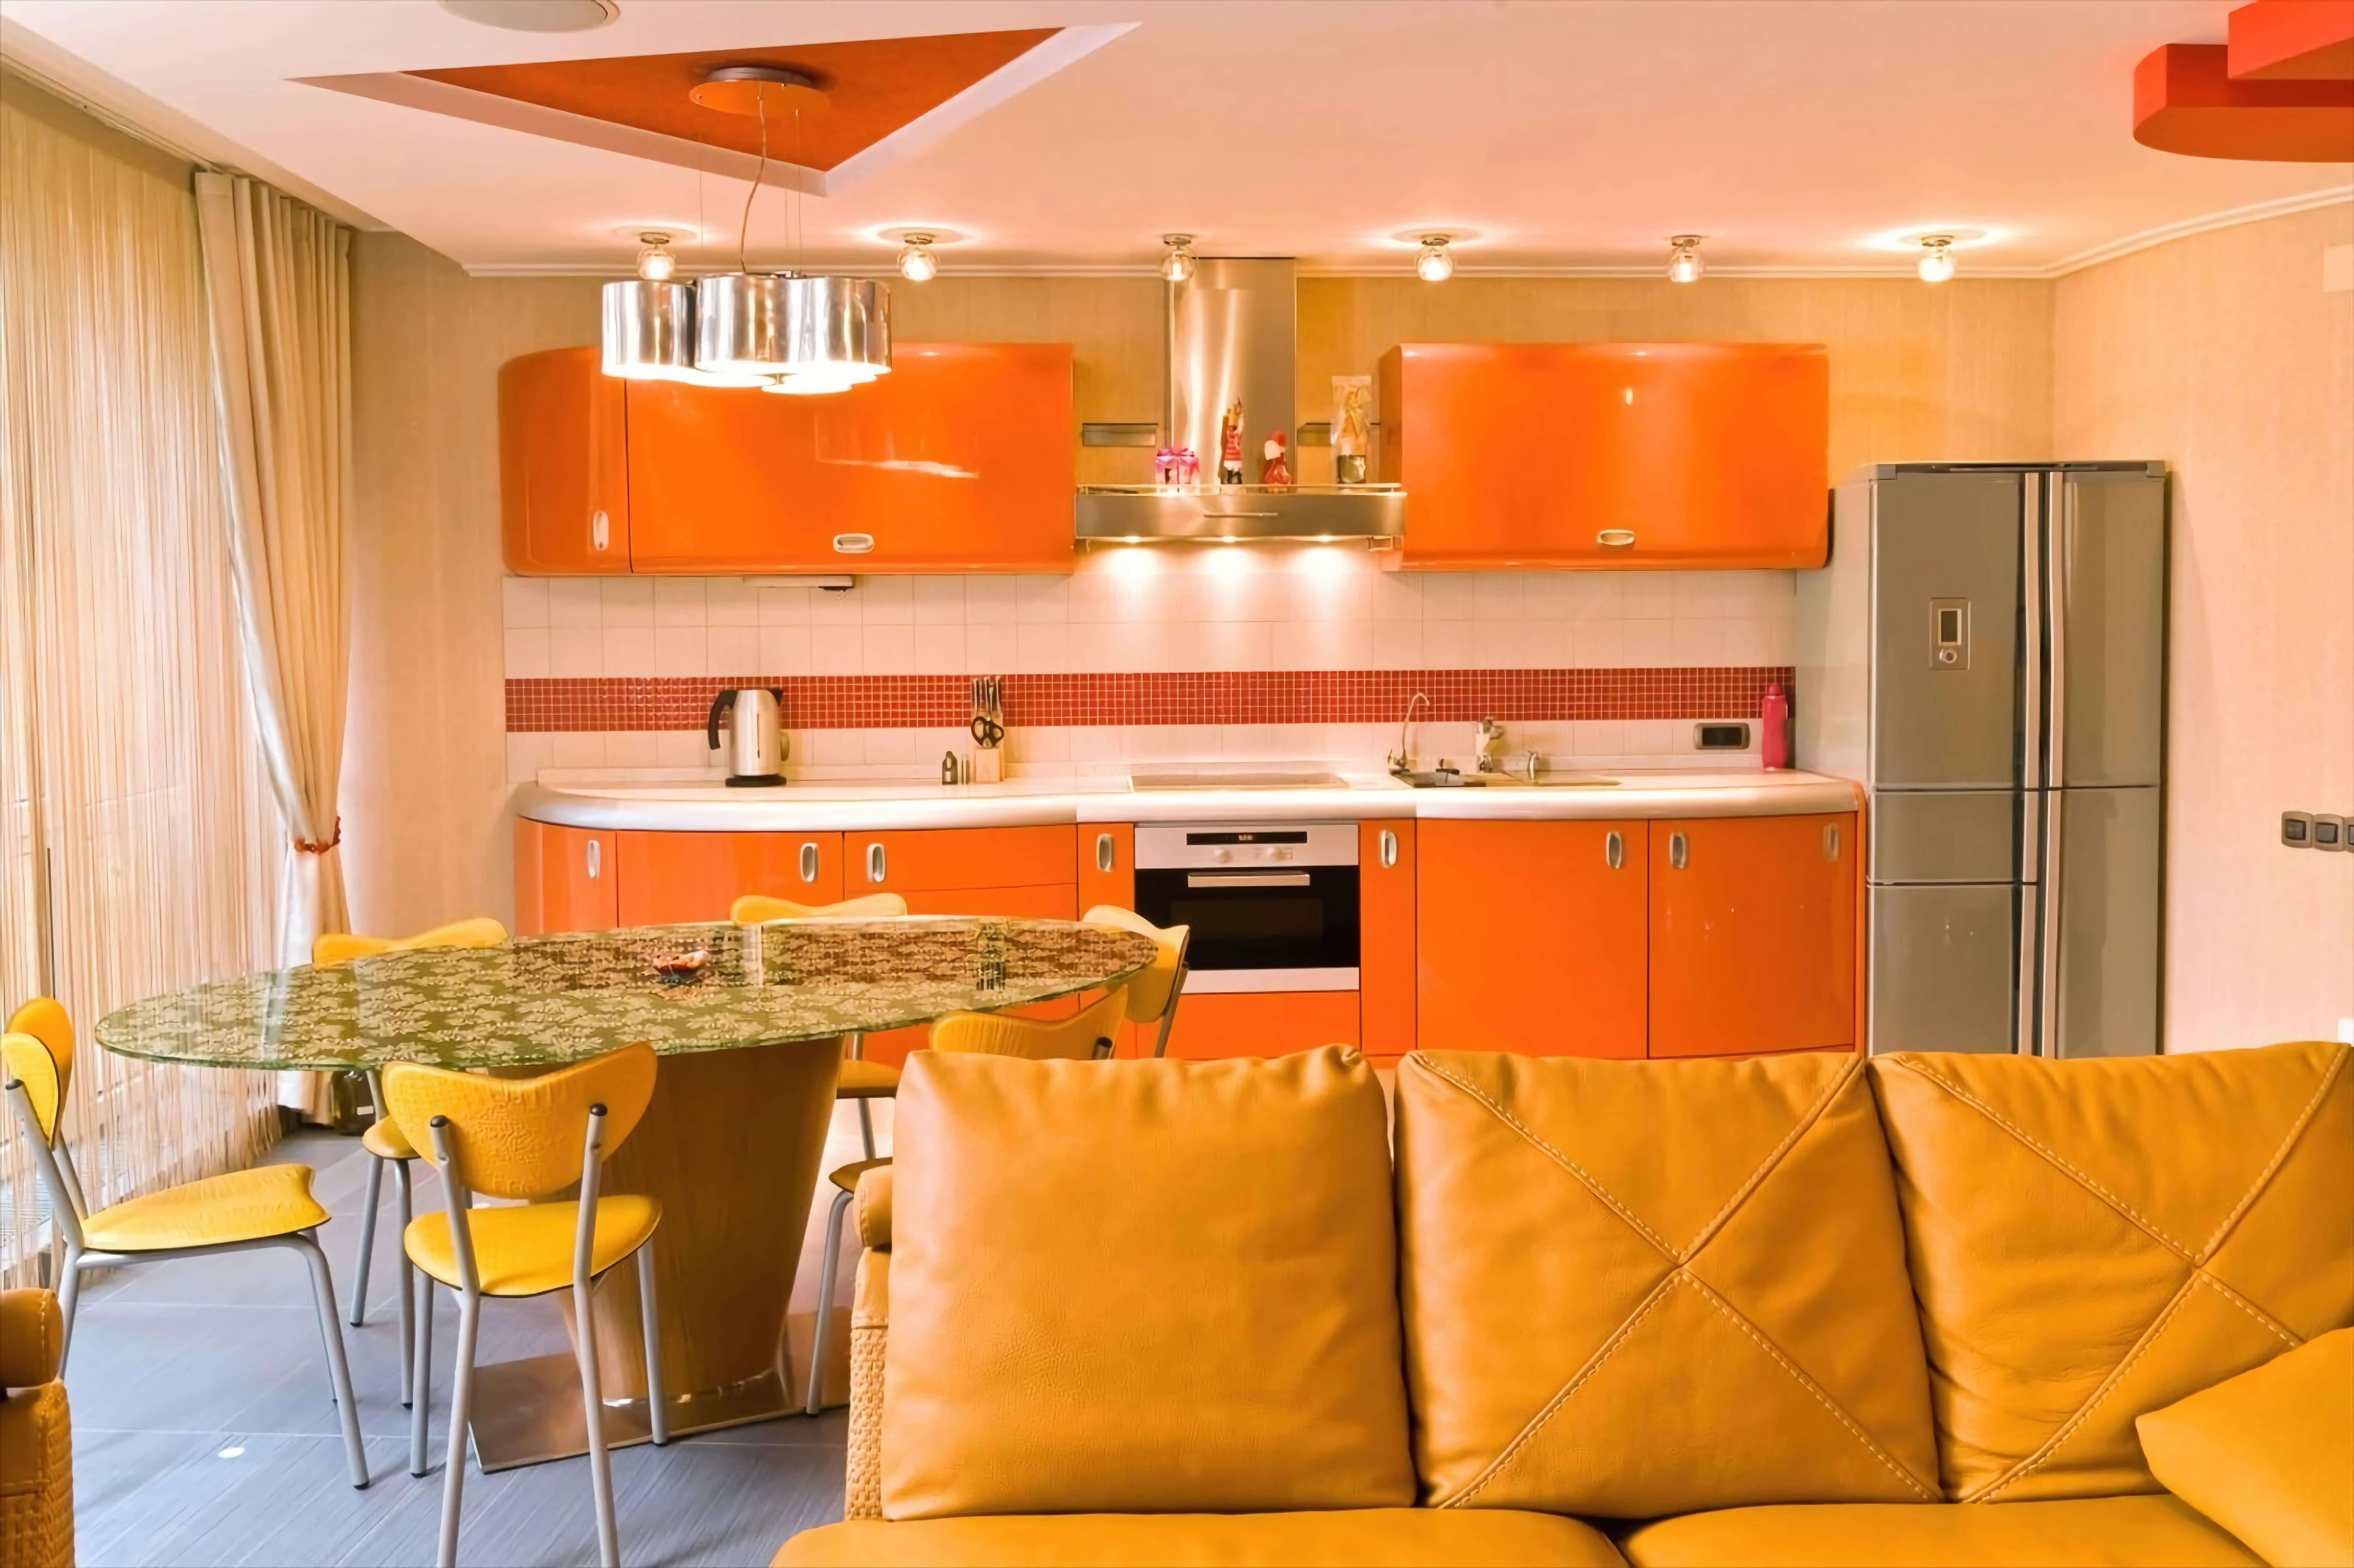 Кухня. Оранжевый кухонный гарнитур, диван, потолок